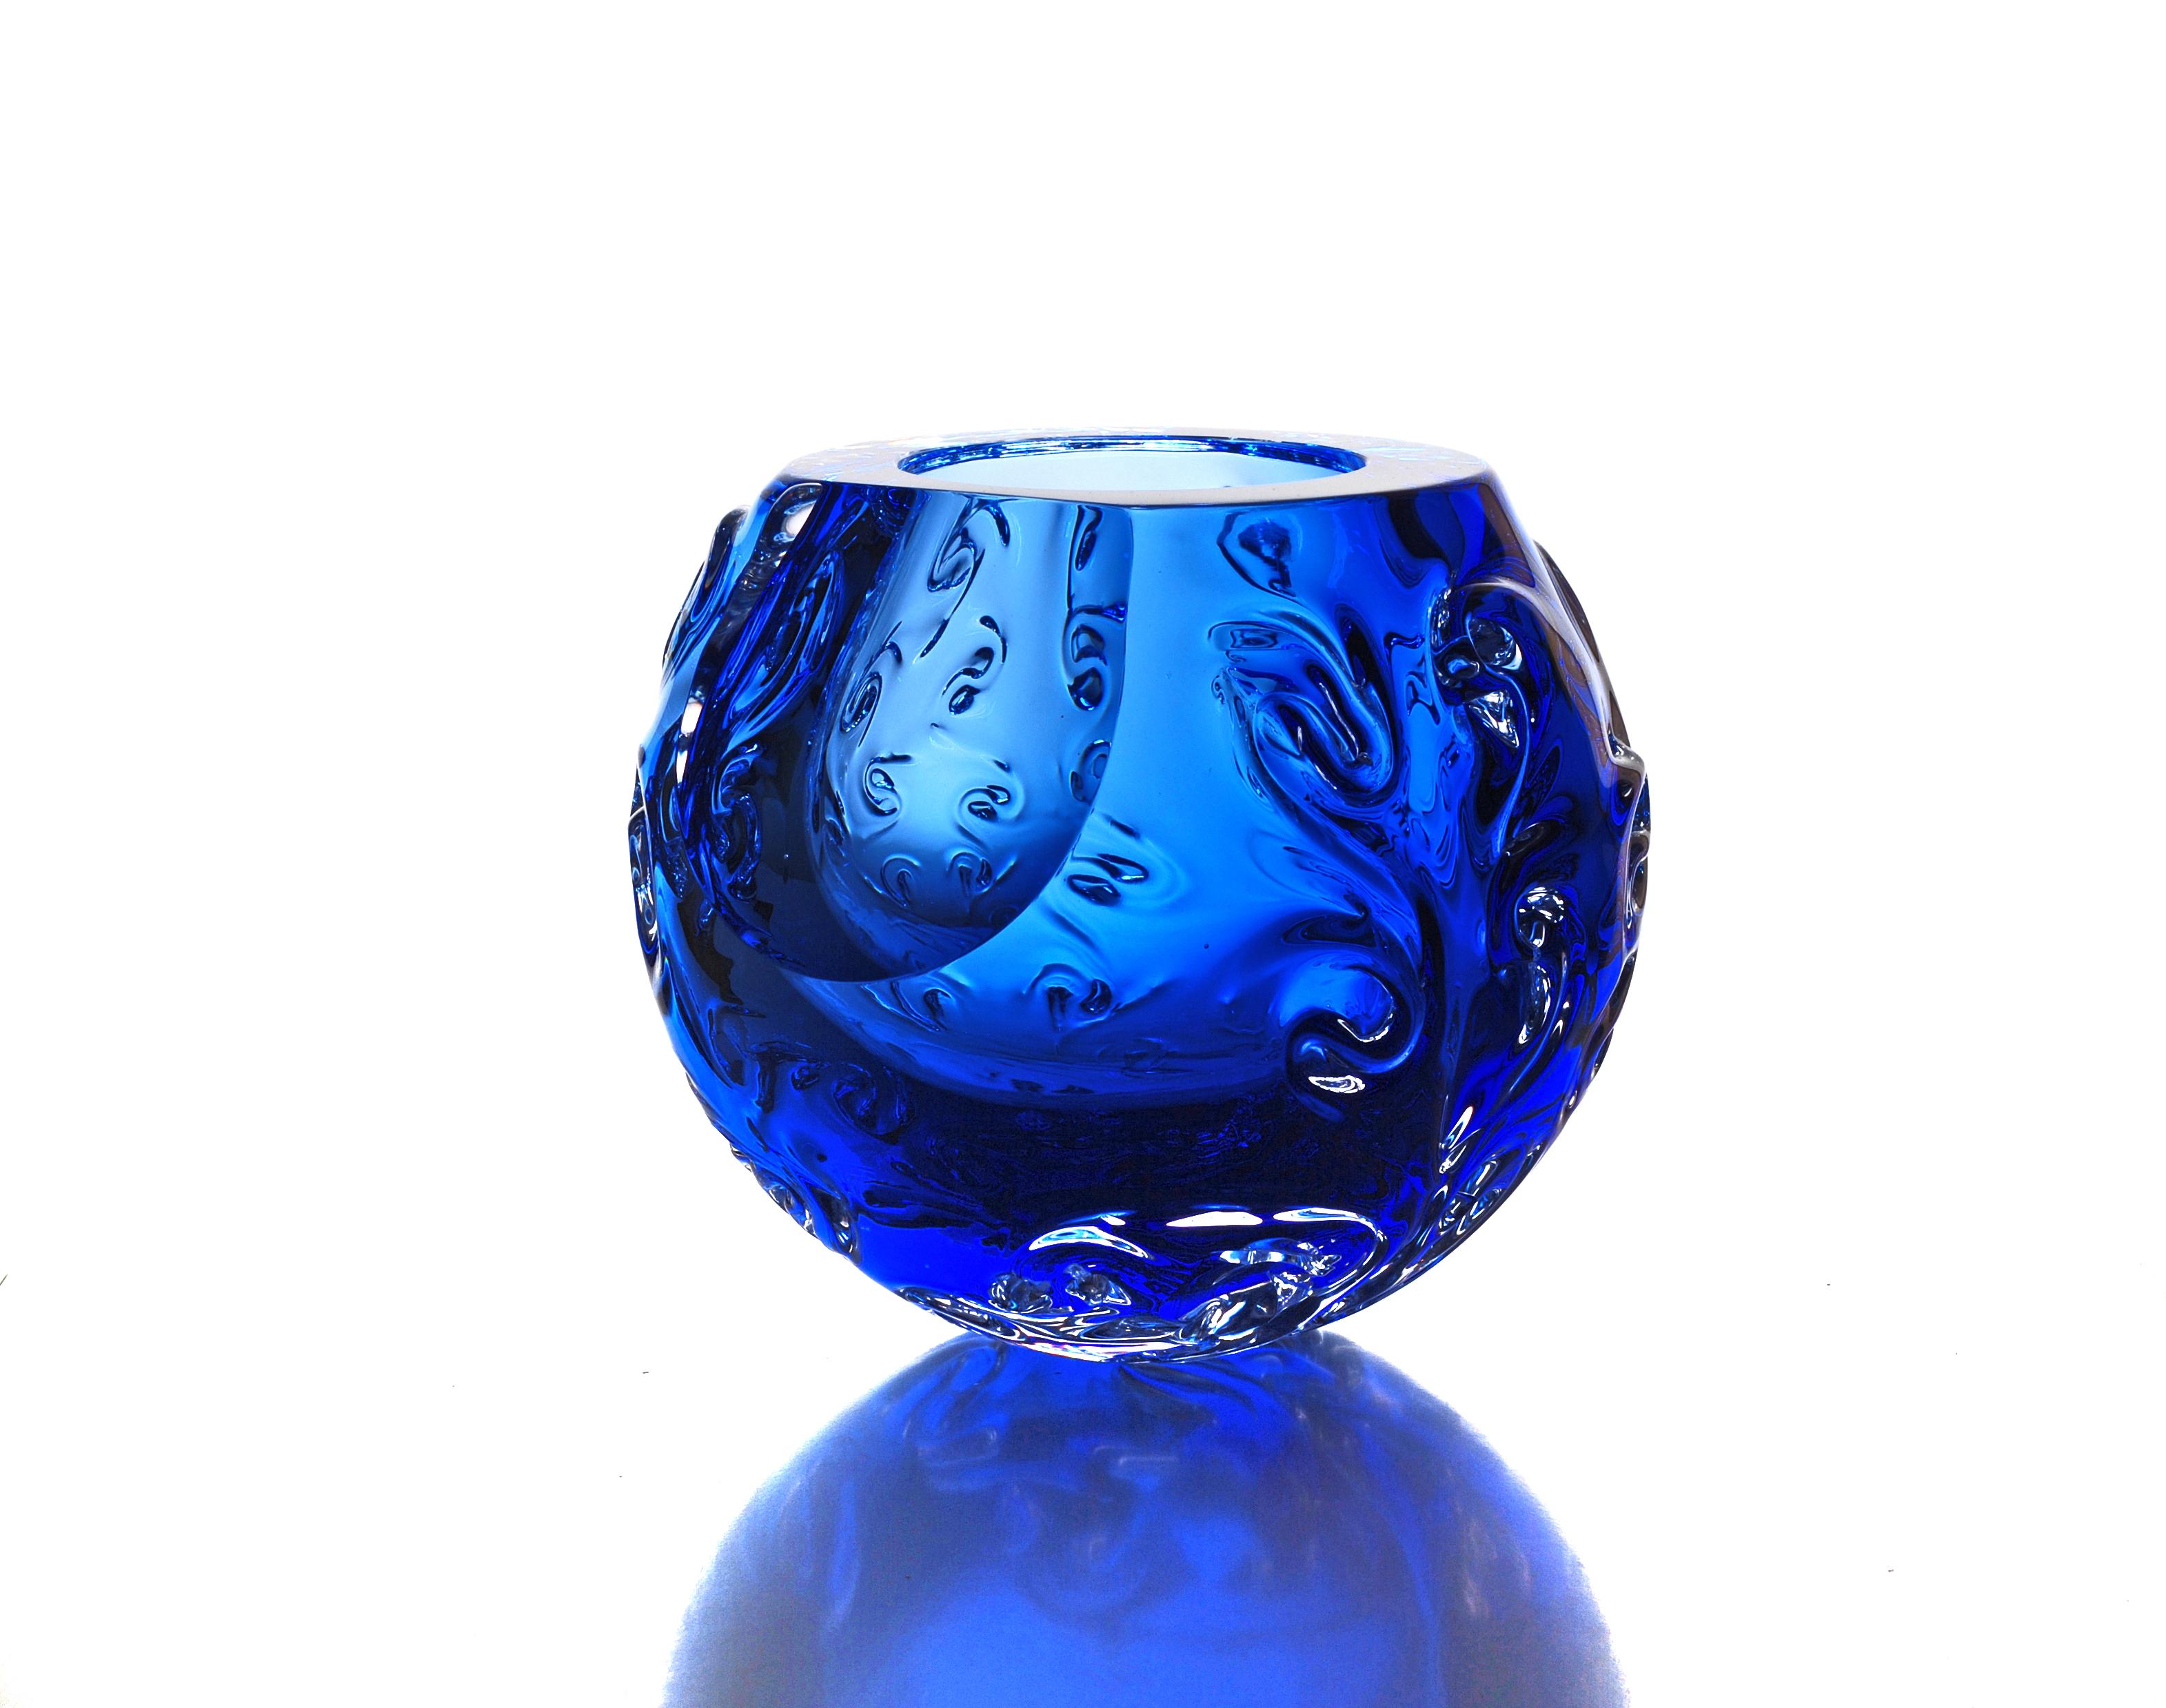 Bol structurel au design organique emblématique. Vase en verre massif bleu sculpté à la main. Il représente une planète - un astéroïde, un fragment de matière cosmique. Le bol est créé par la mise en forme spontanée d'une masse de verre chaud sans